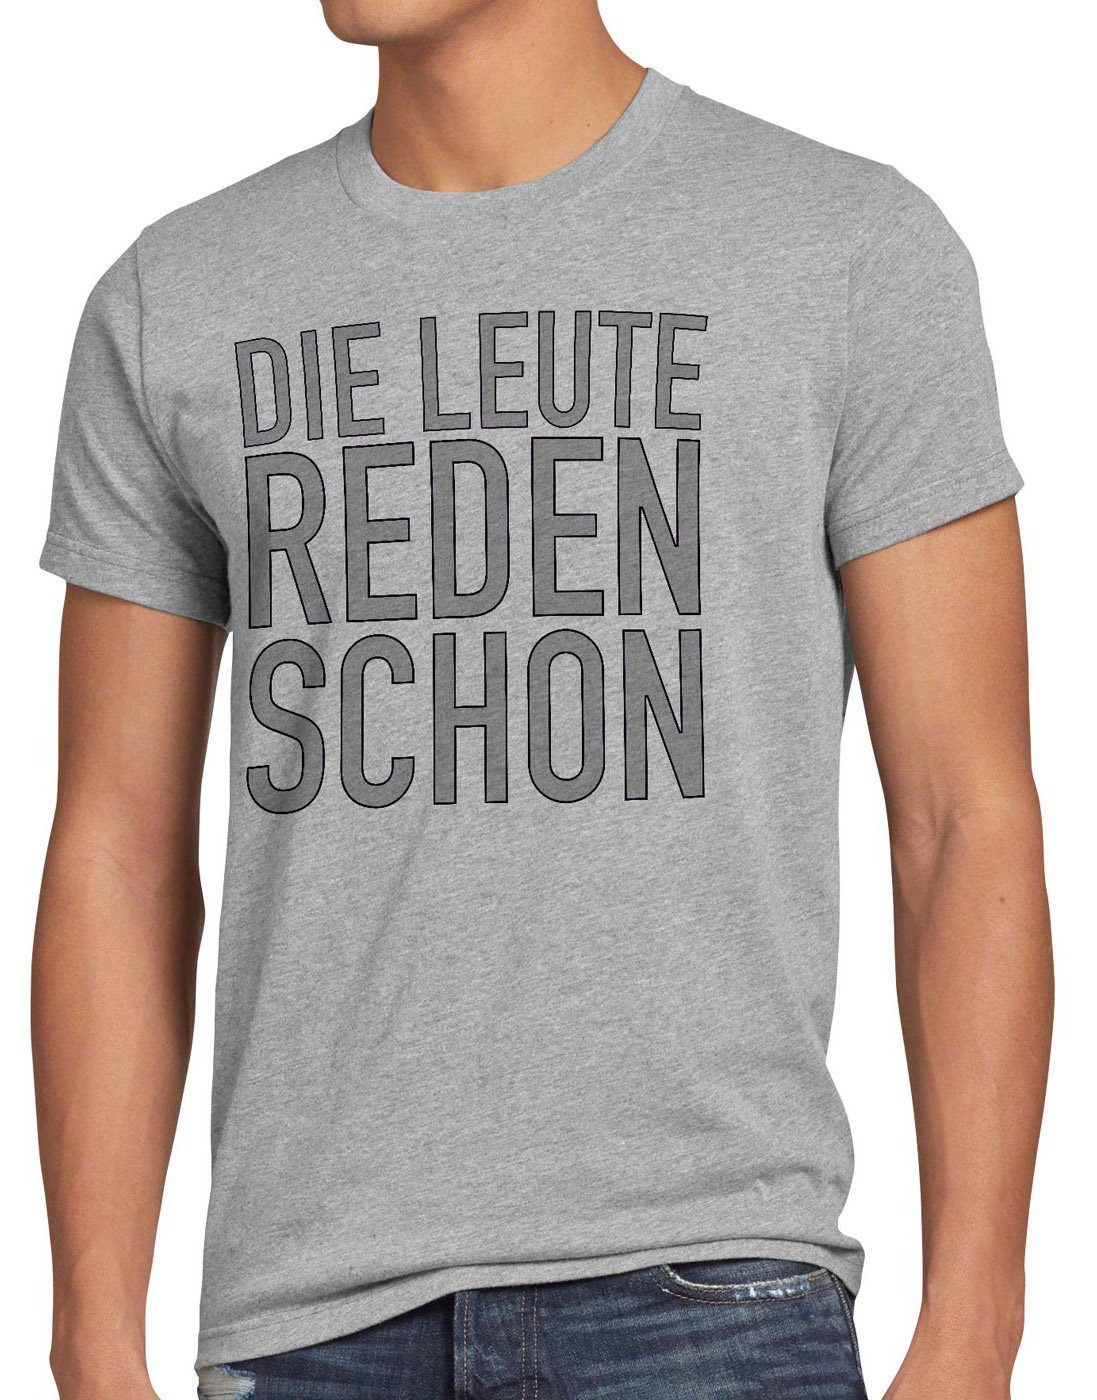 style3 Print-Shirt Herren T-Shirt Die Leute reden schon Funshirt Spruch Berlin spruchshirt hipster grau meliert